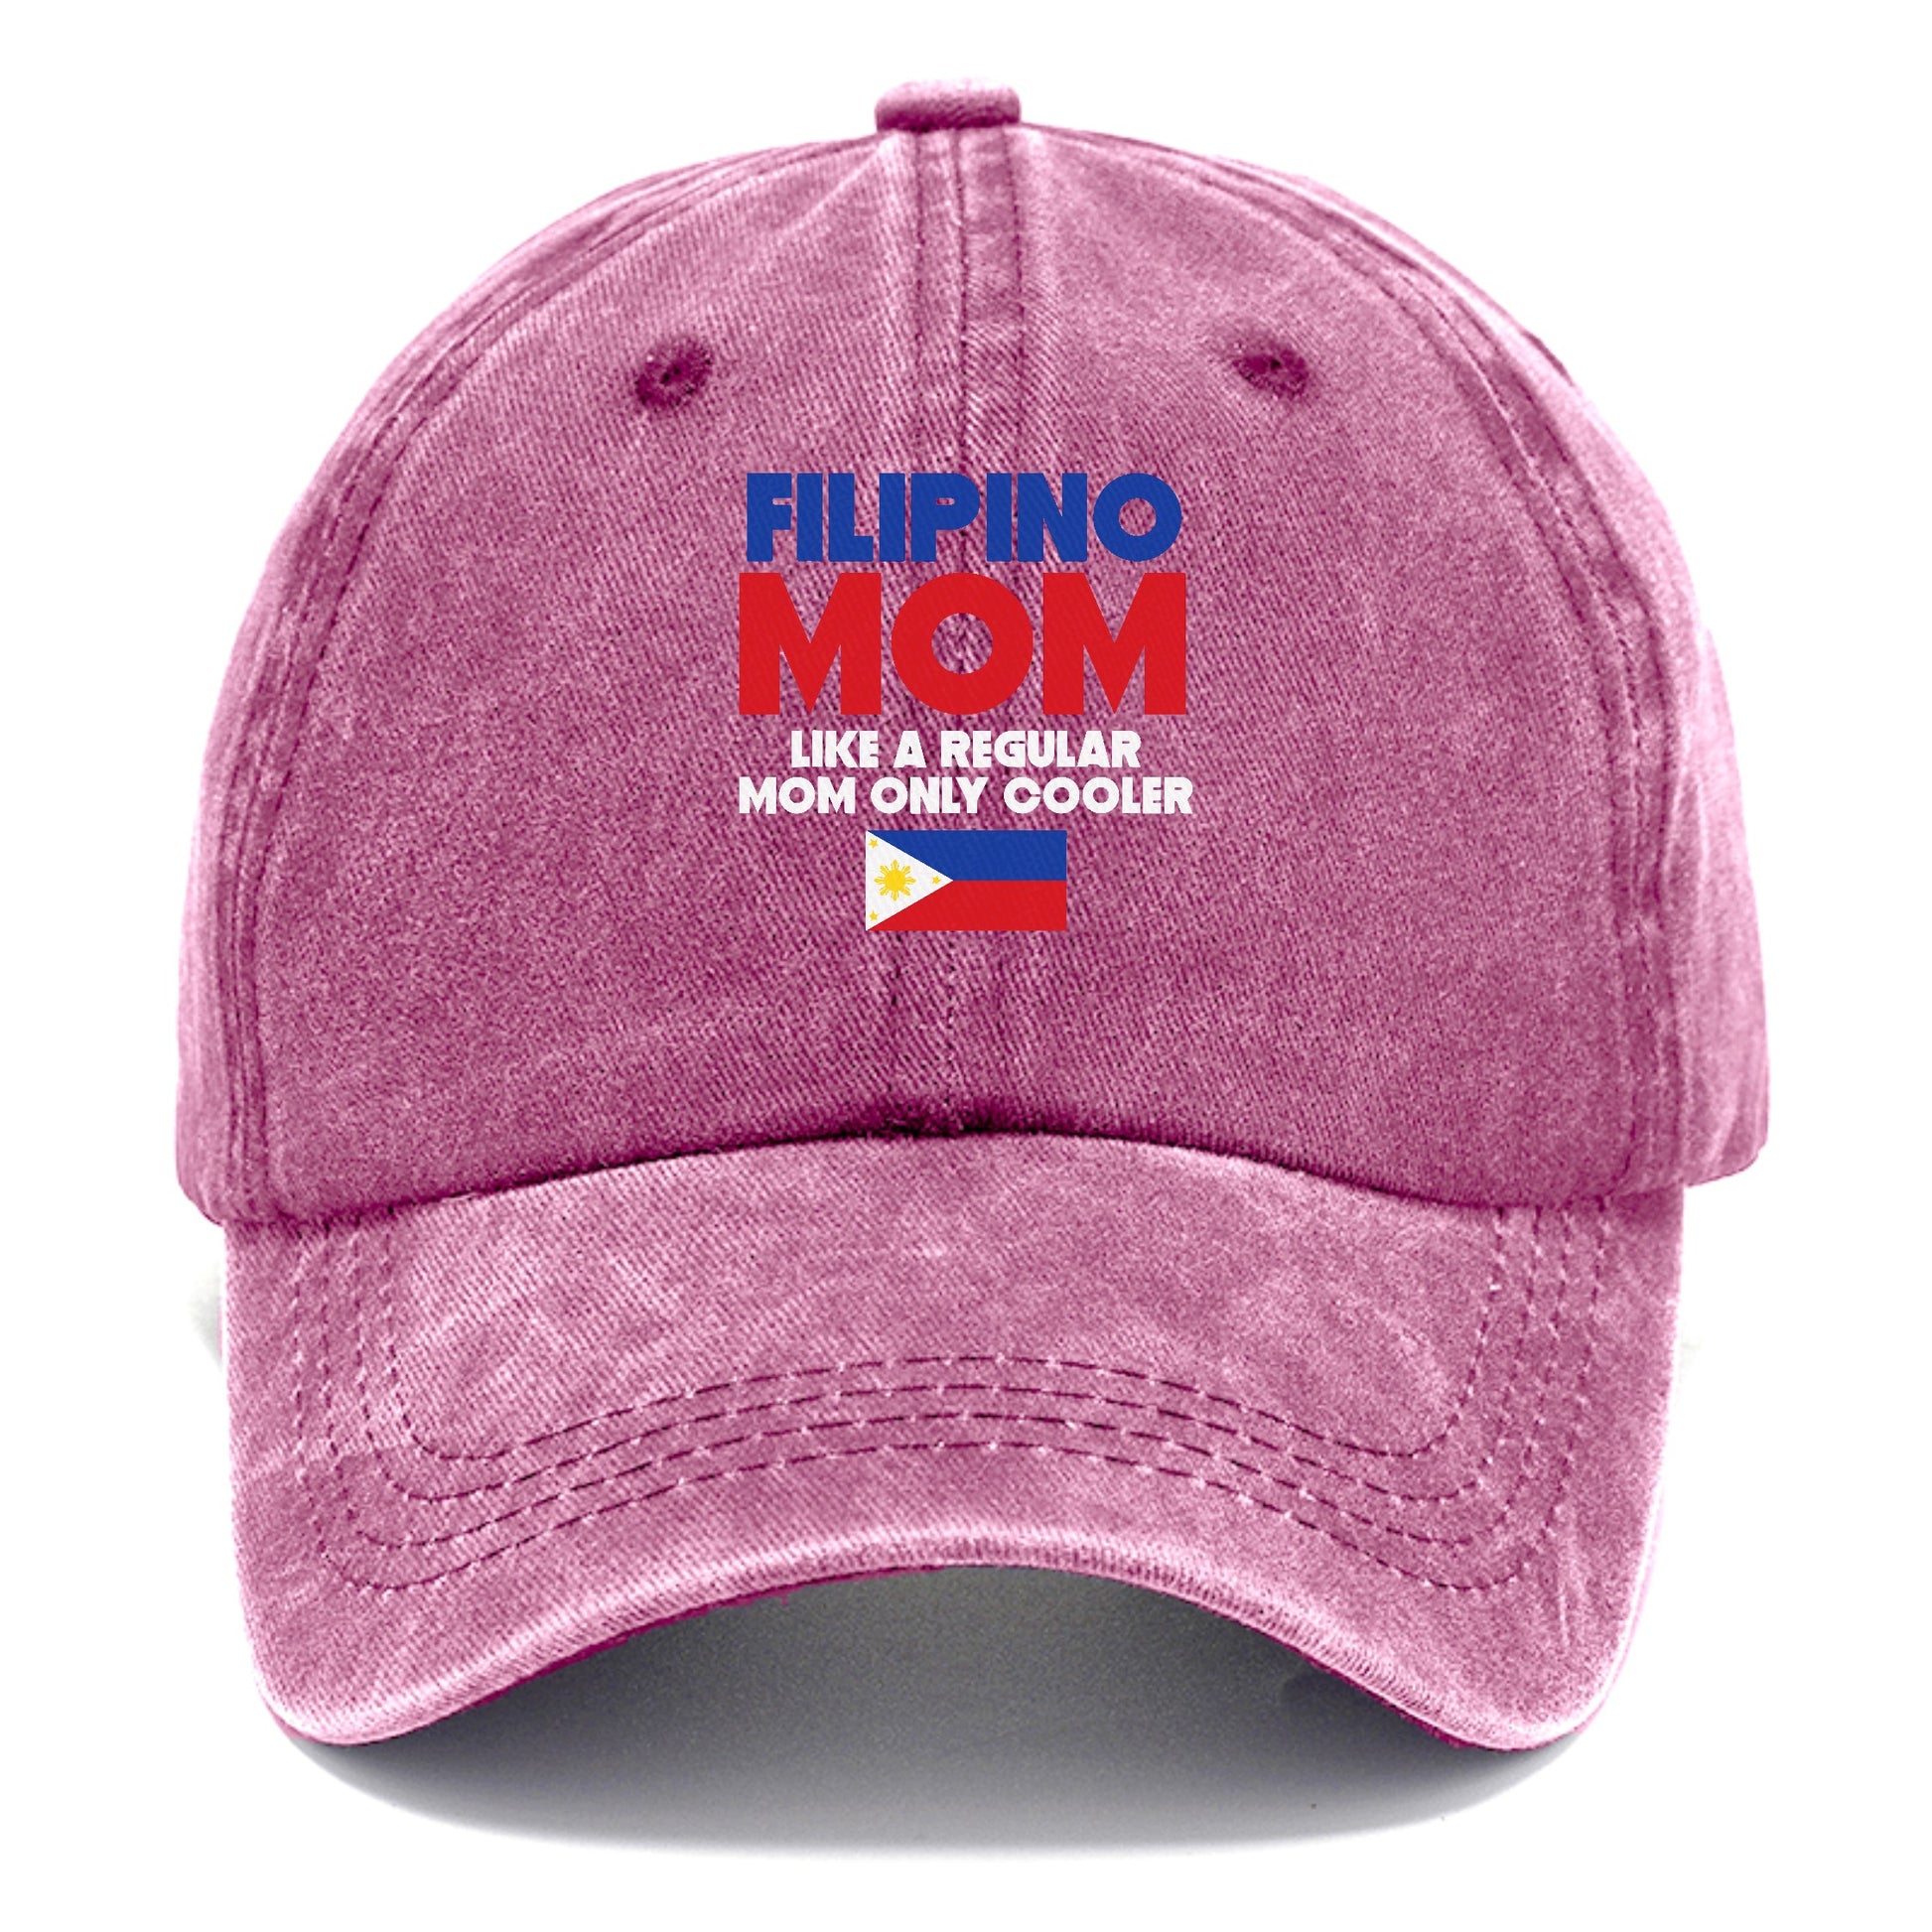 filipino mom Hat